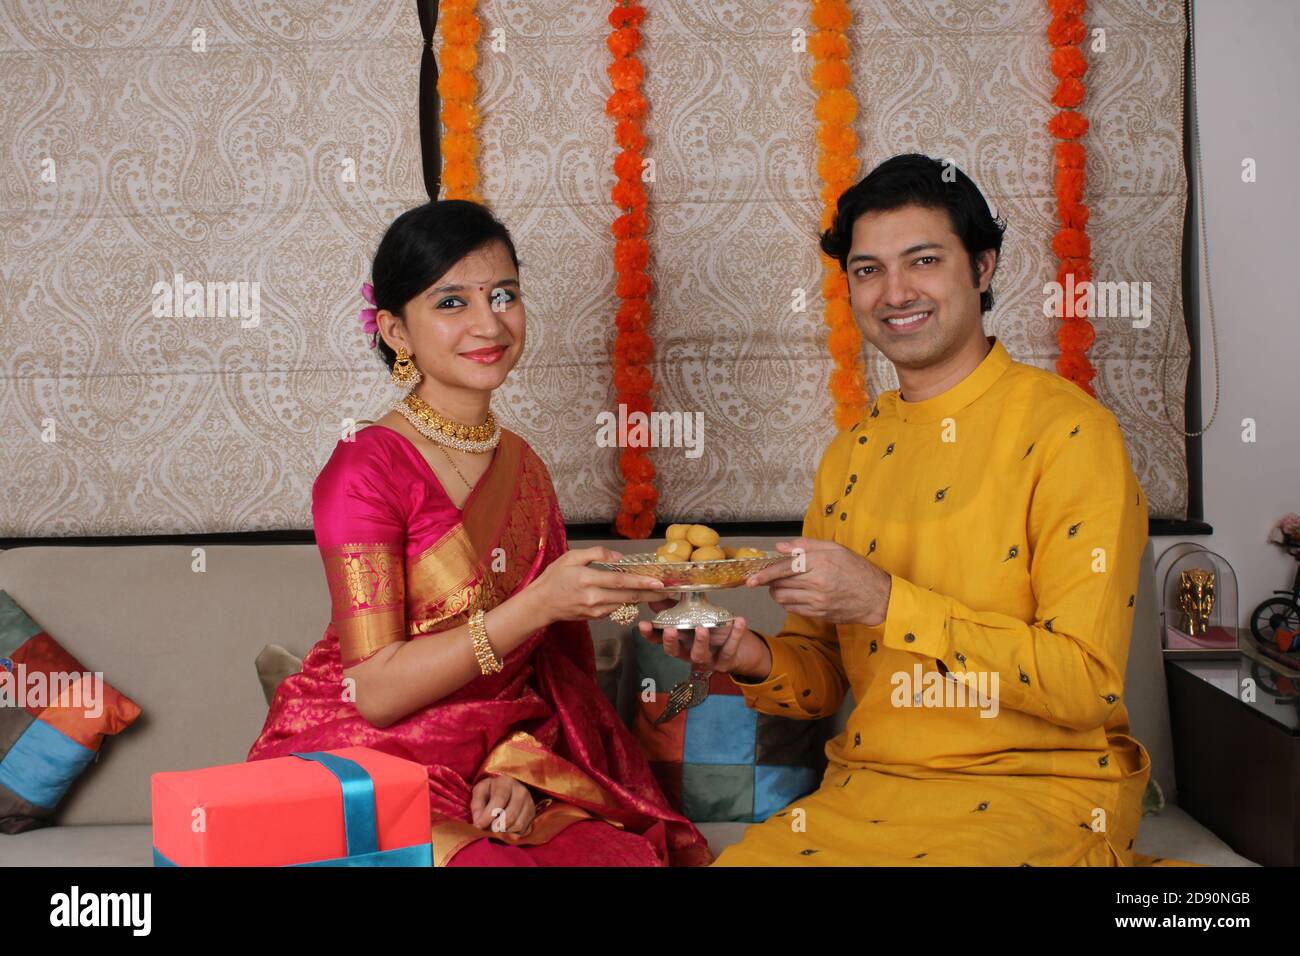 Indisches Paar mit Süßigkeiten und Geschenken während der Feier Diwali, Deepavali oder Dipavali Festival. Stockfoto